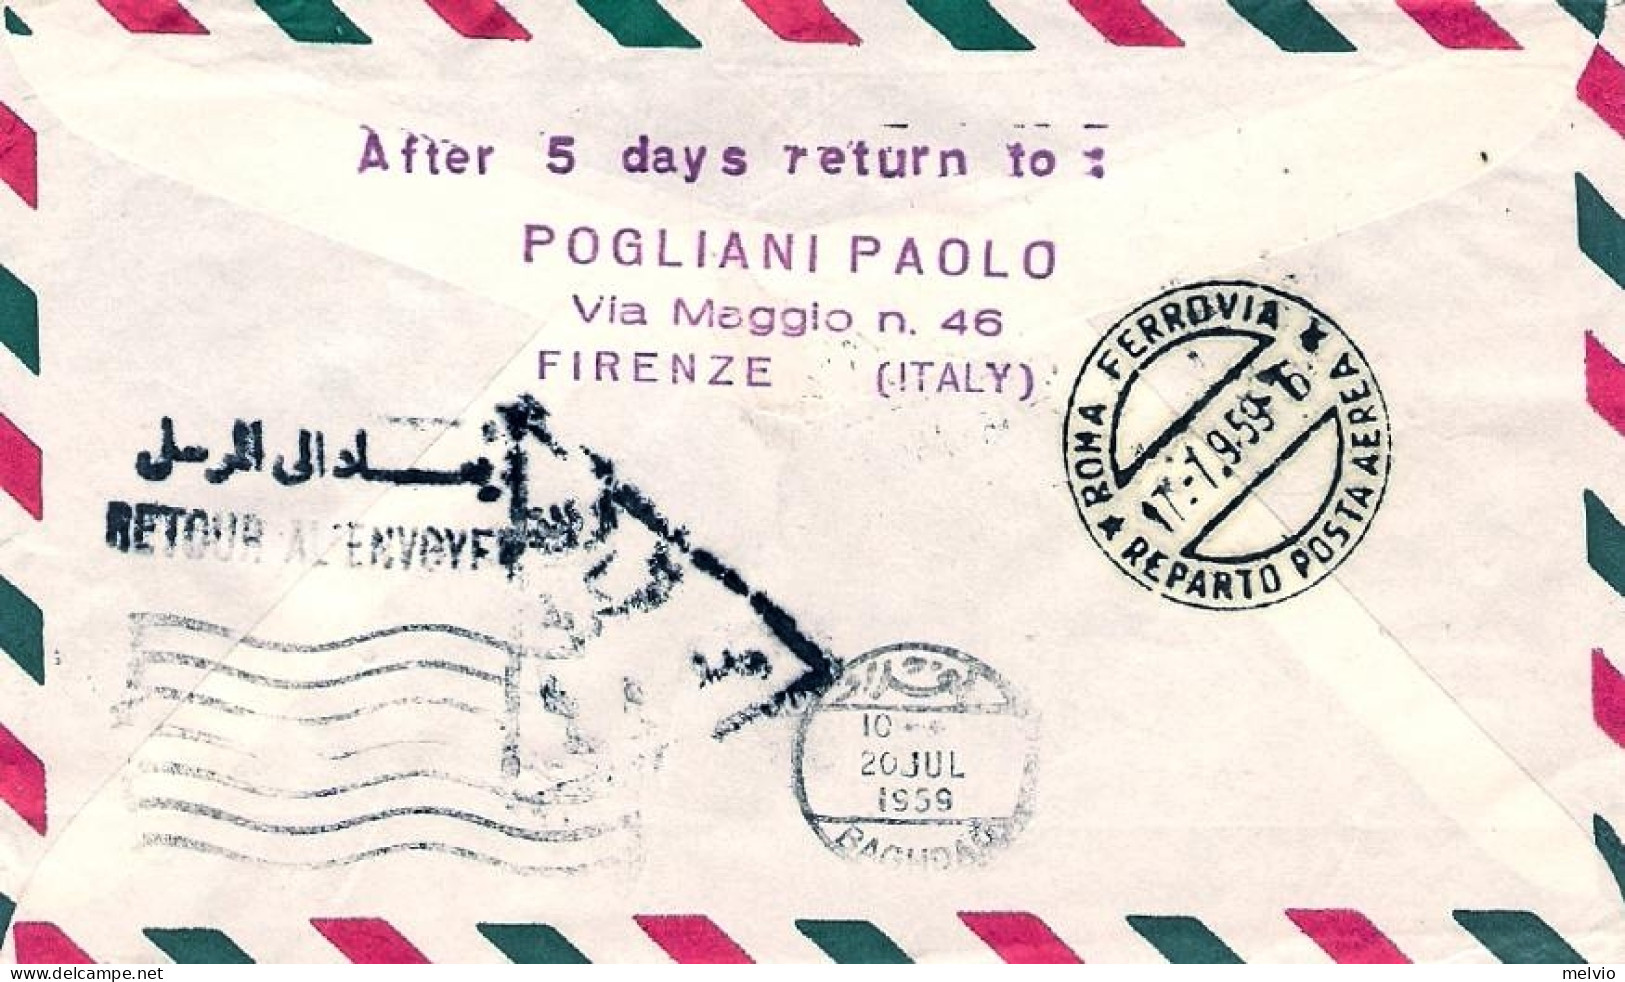 Vaticano-1959 Con Erinnofilo I^volo Caravelle Roma Baghdad (30 Pezzi Trasportati - Posta Aerea